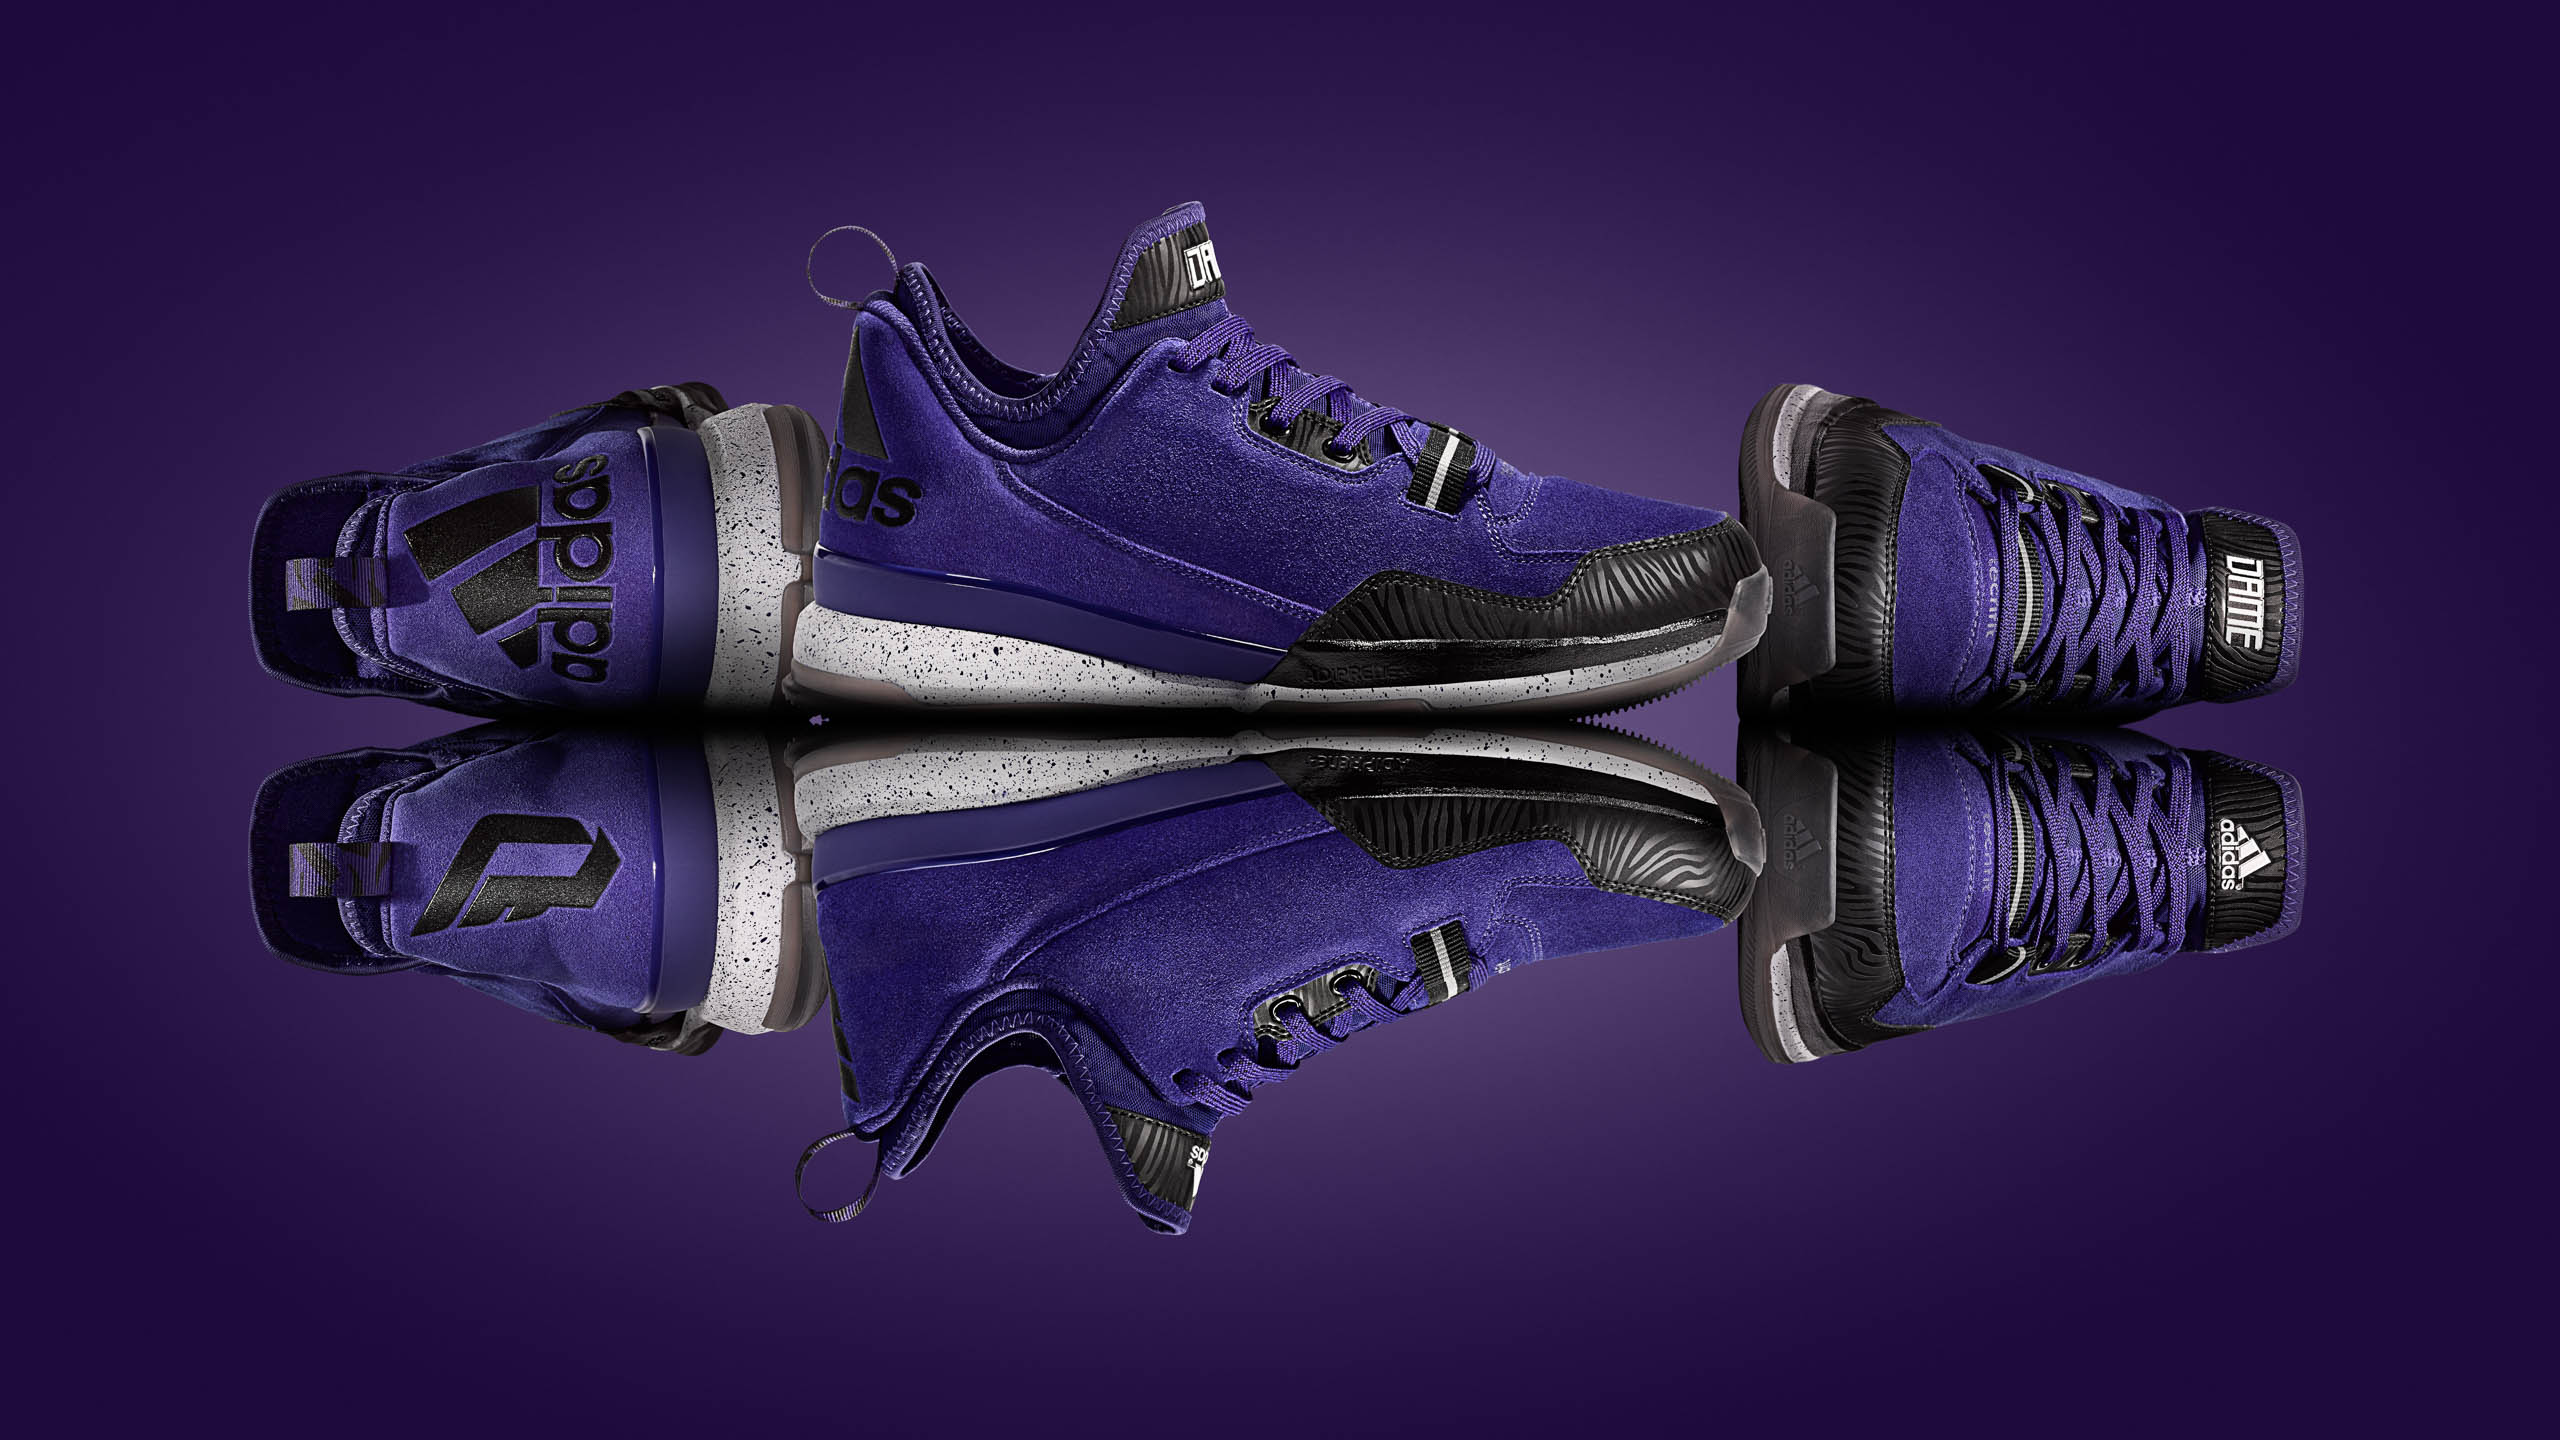 Adidas DLillard1 basketball footwear